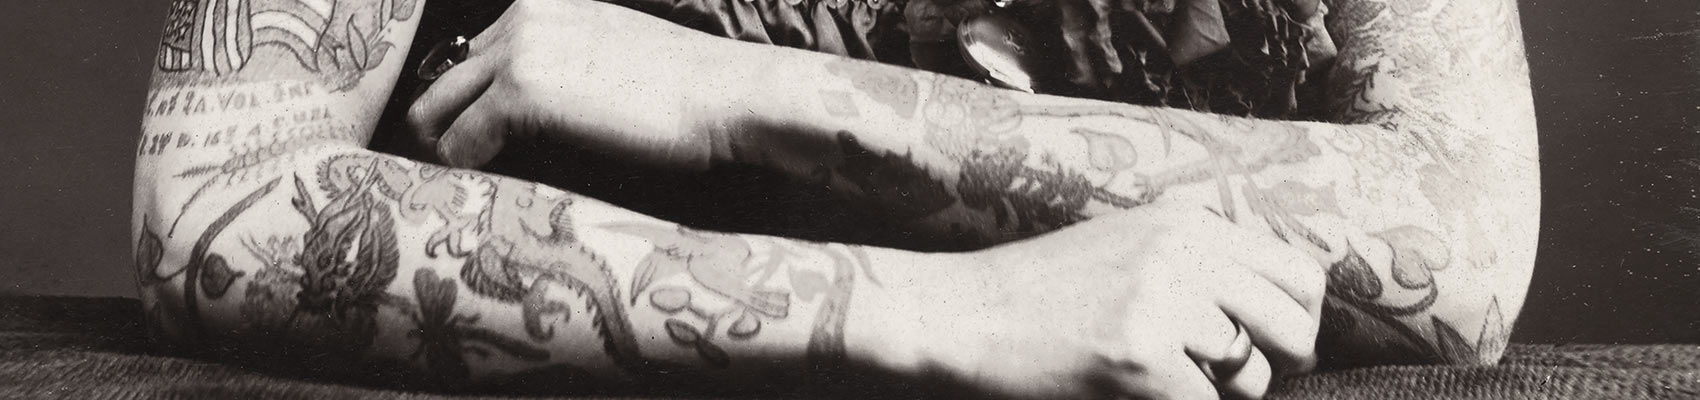 Tattoos auf den Armen einer Frau